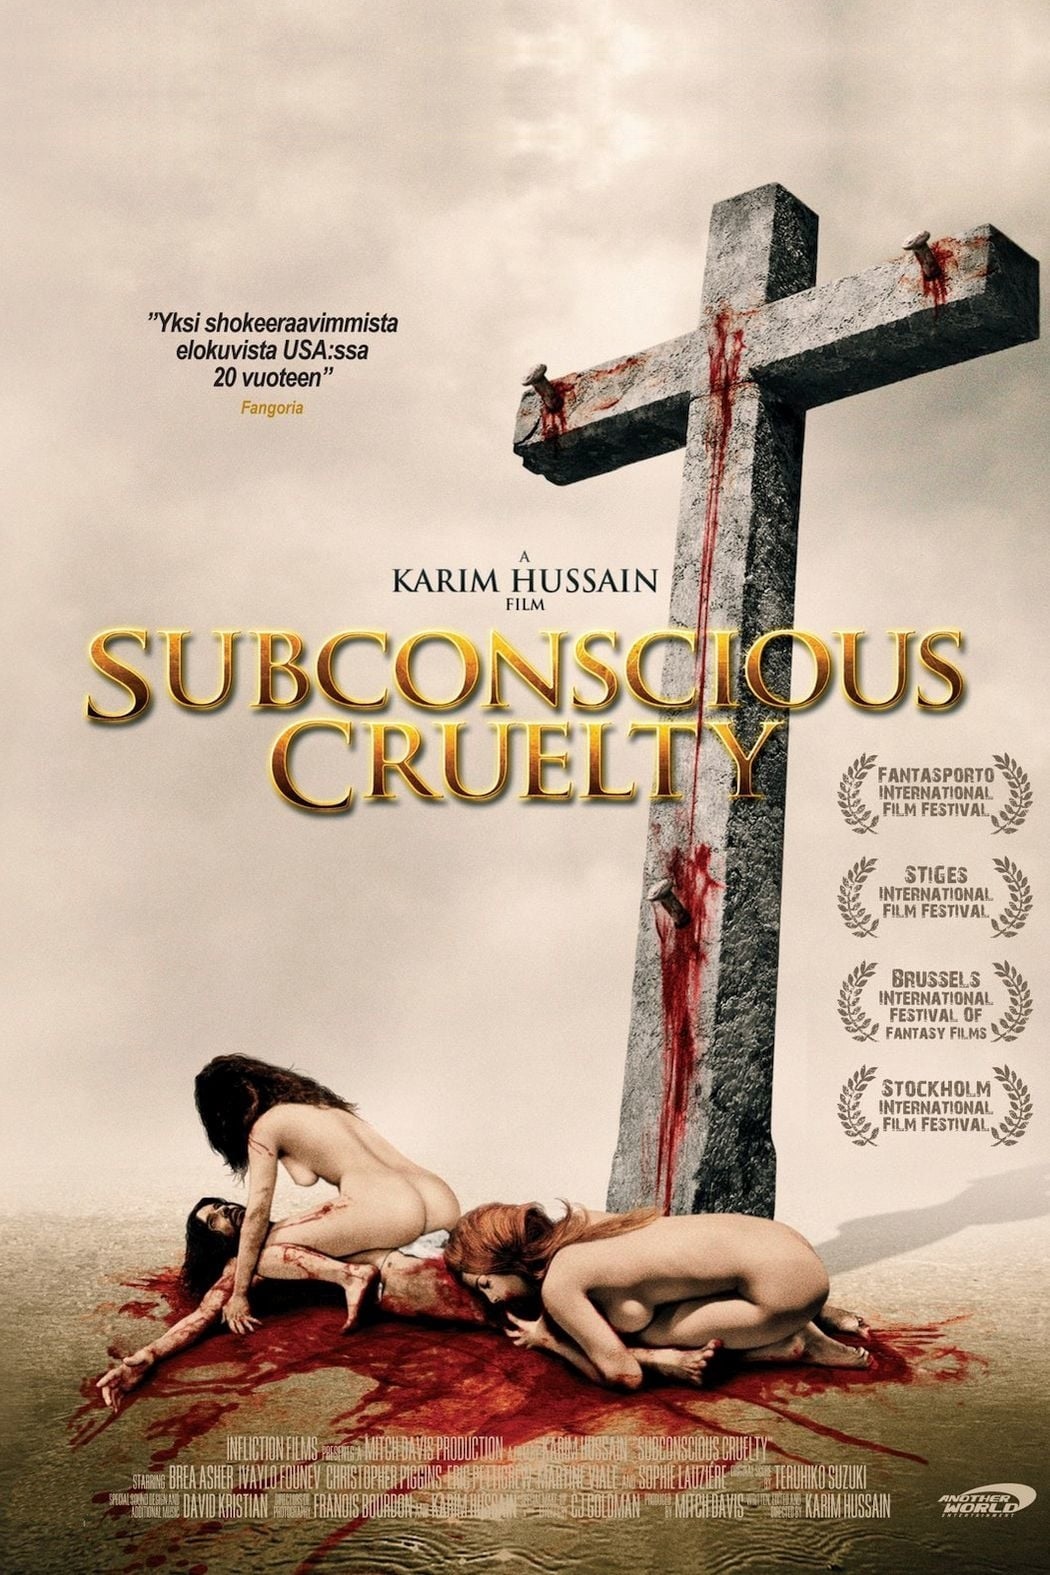 Subconscious cruelty [Sub-ITA] (2000)